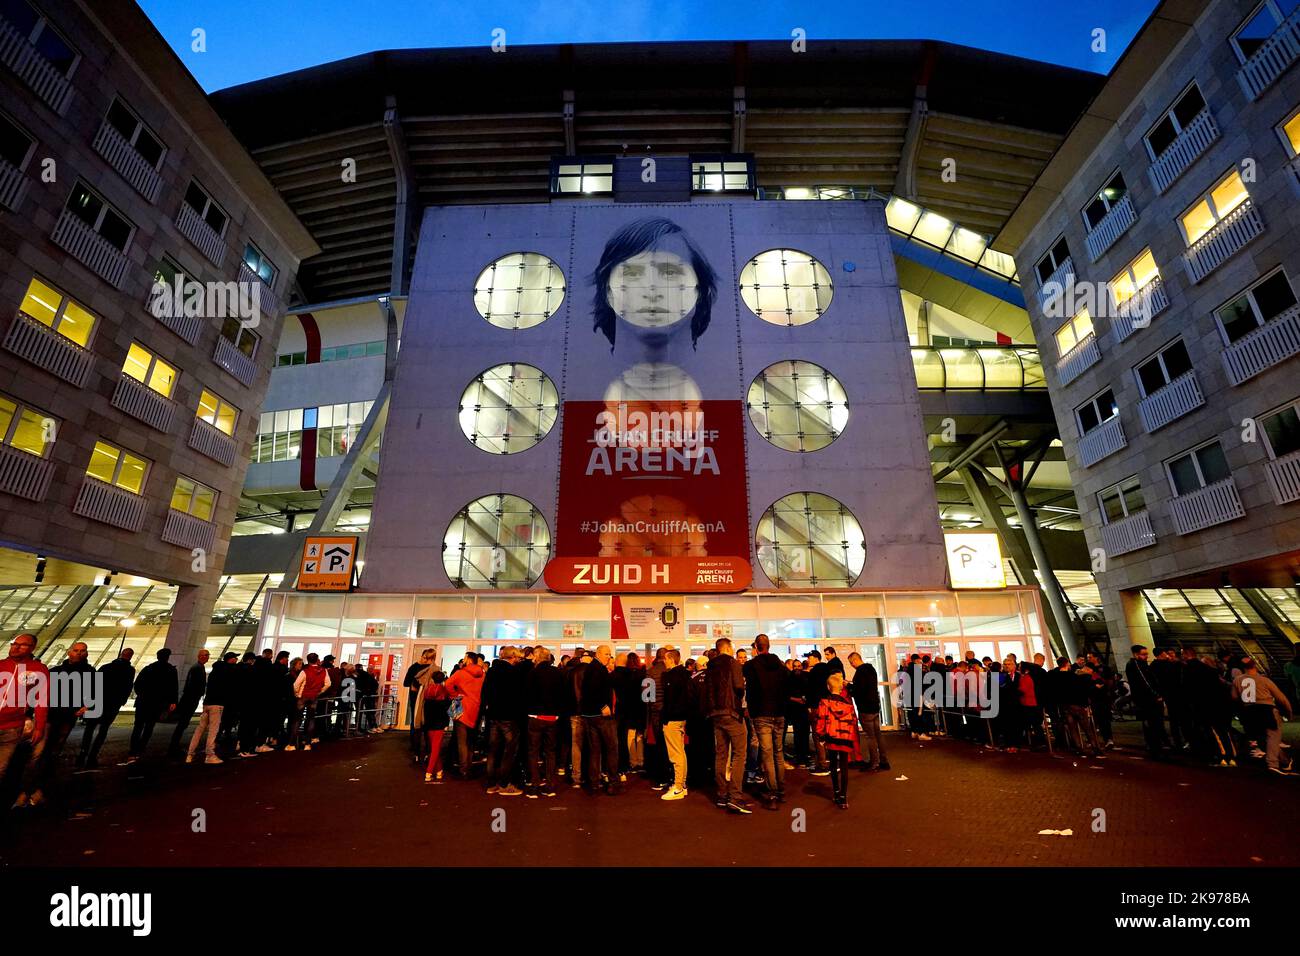 Die Fans stehen Schlange, um das Stadion vor dem Spiel der UEFA Champions League-Gruppe A in der Johan Cruyff Arena in Amsterdam, Niederlande, zu betreten. Bilddatum: Mittwoch, 26. Oktober 2022. Stockfoto